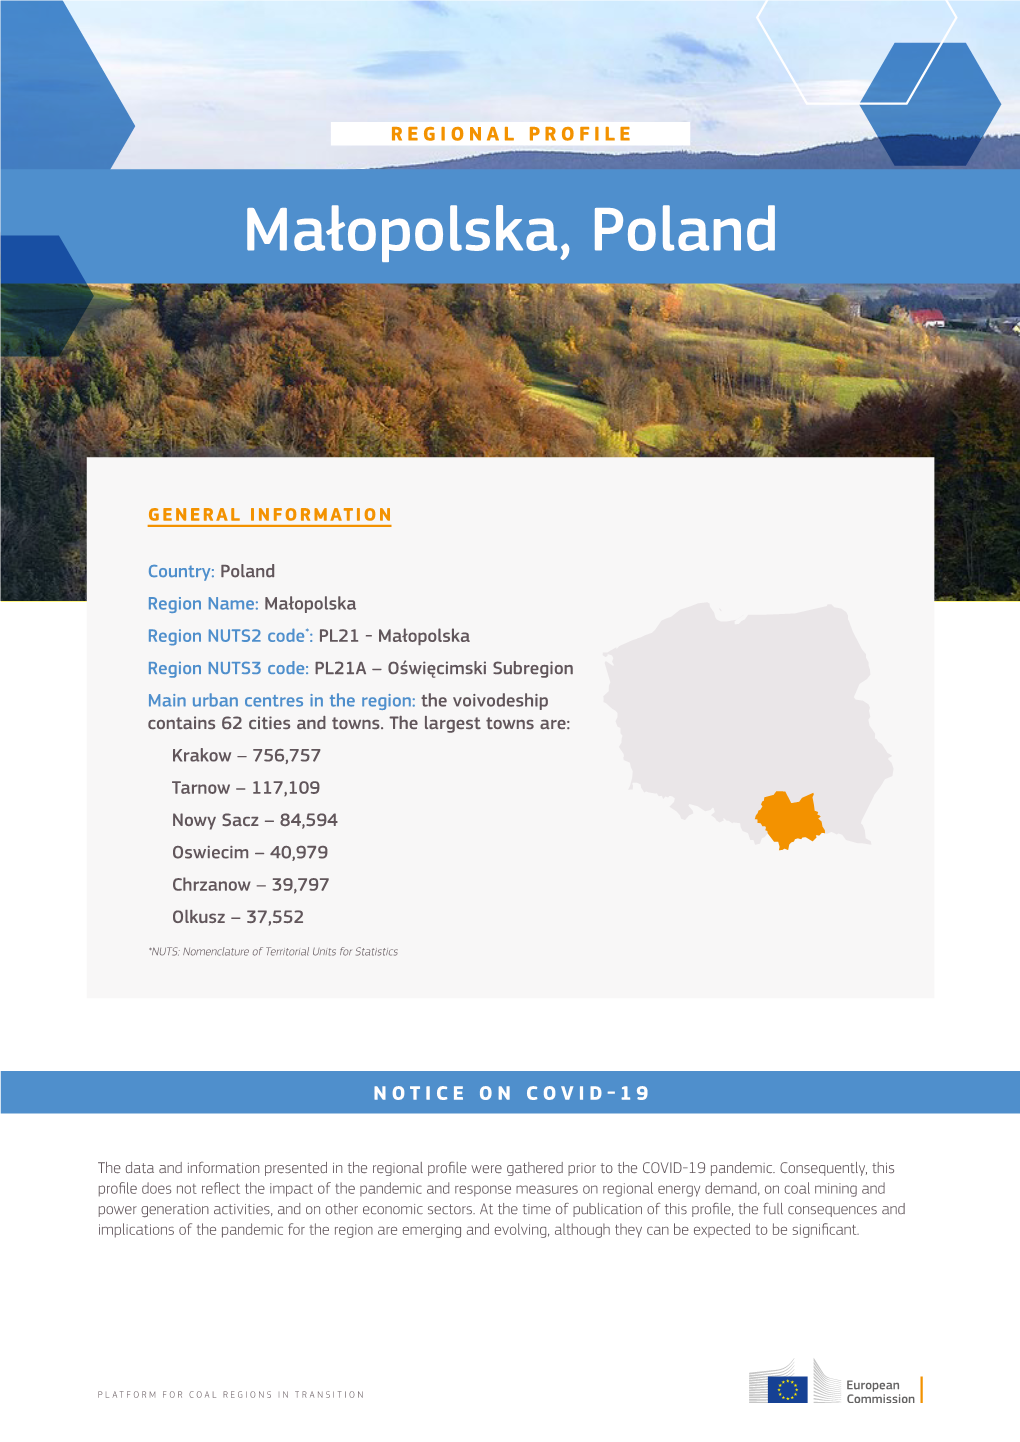 Małopolska, Poland - Regional Profile 1